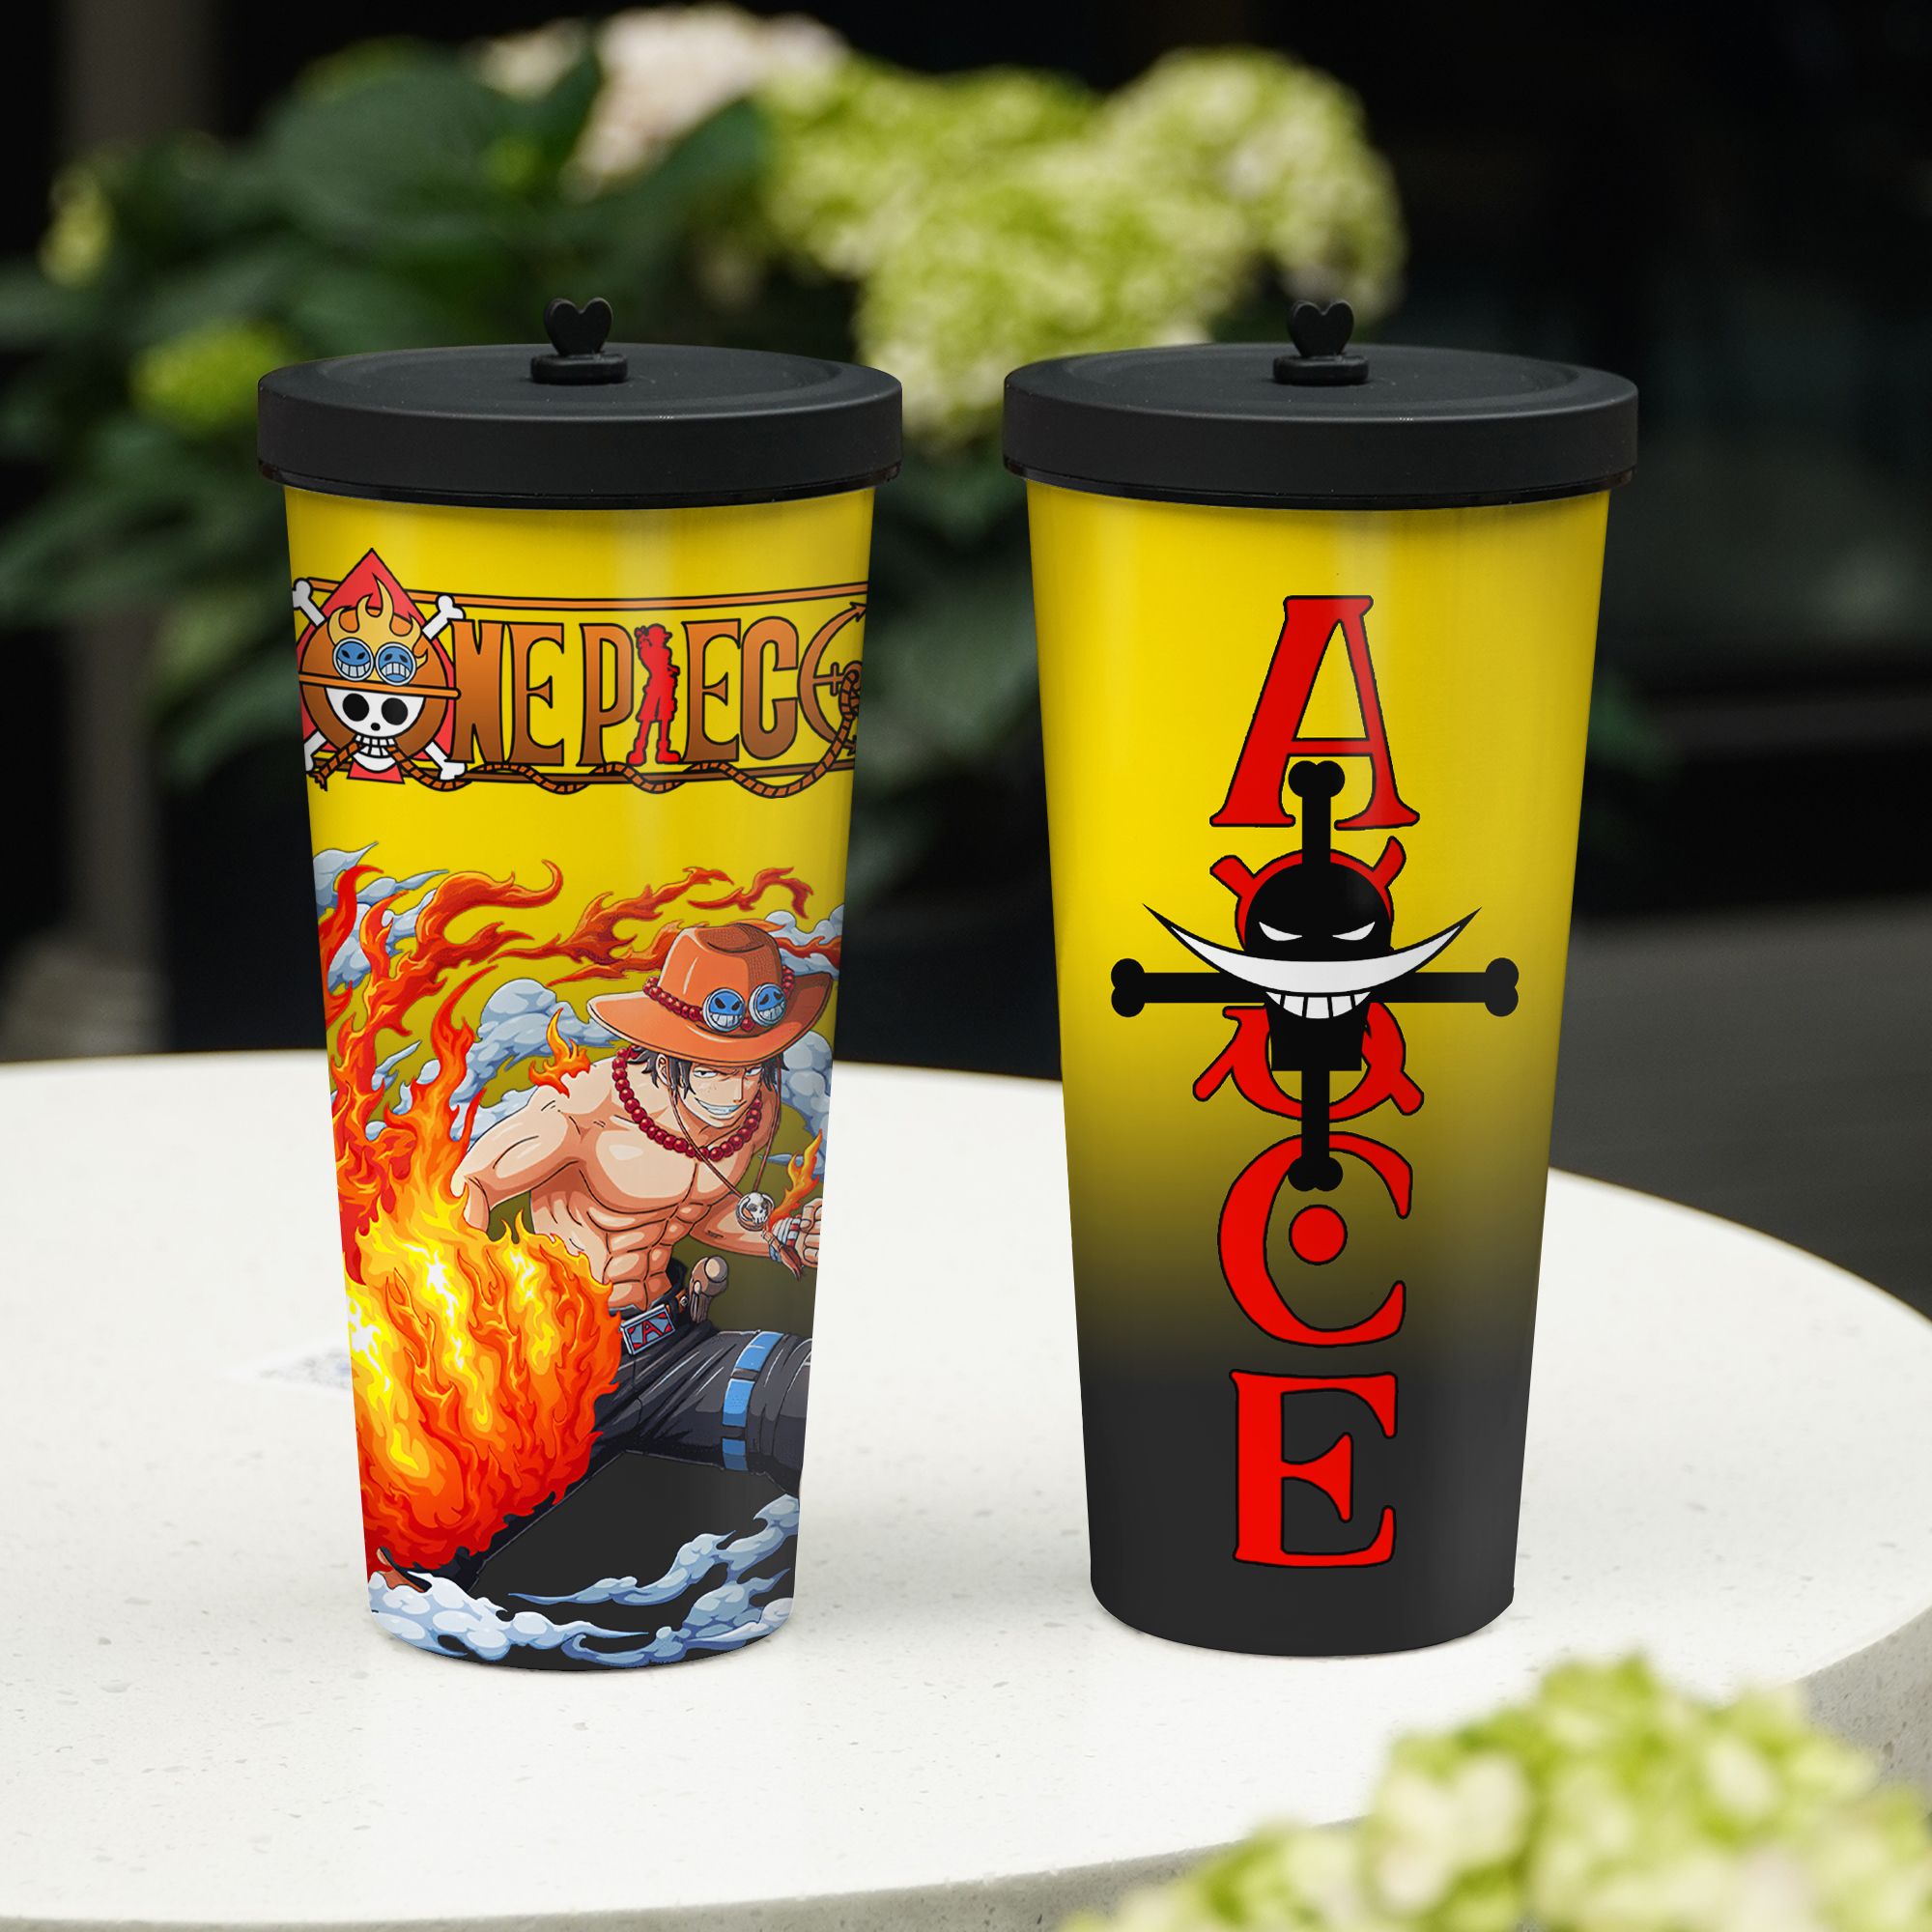  Ace Vua Hải Tặc One Piece Go Drink Anime Cốc Giữ Nhiệt 740ml In tên, hình ảnh theo yêu cầu 